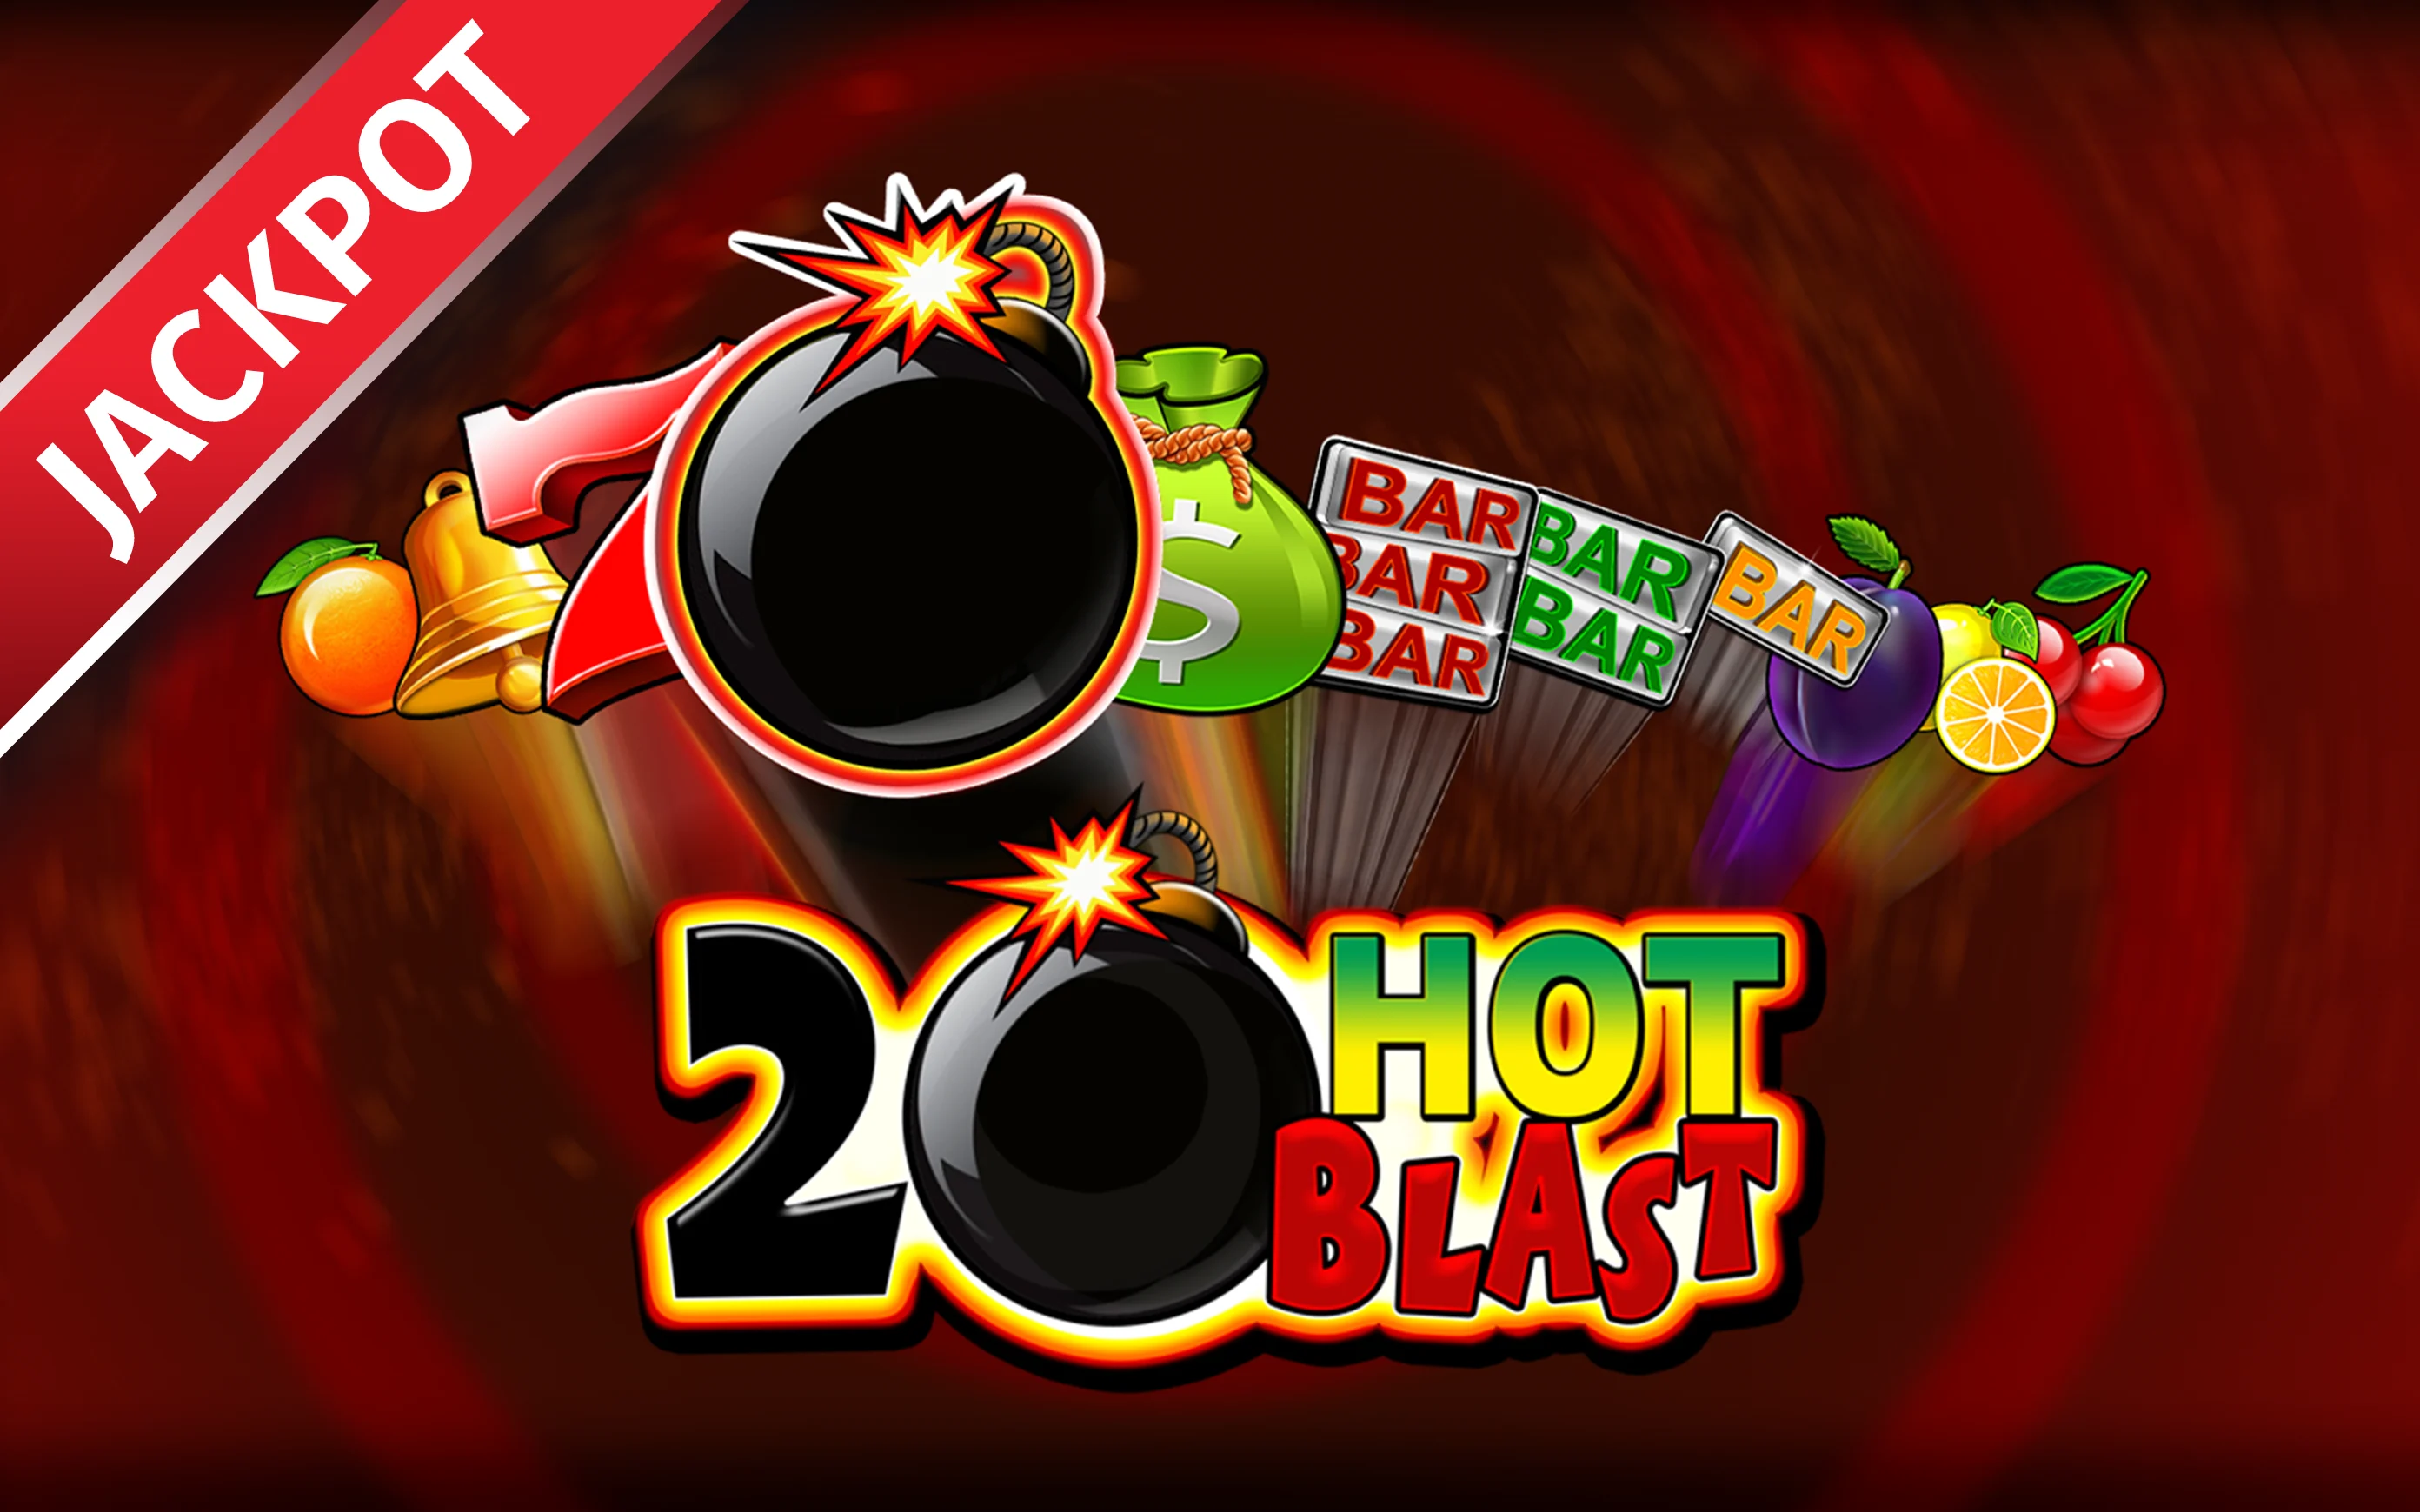 Juega a 20 Hot Blast en el casino en línea de Starcasino.be